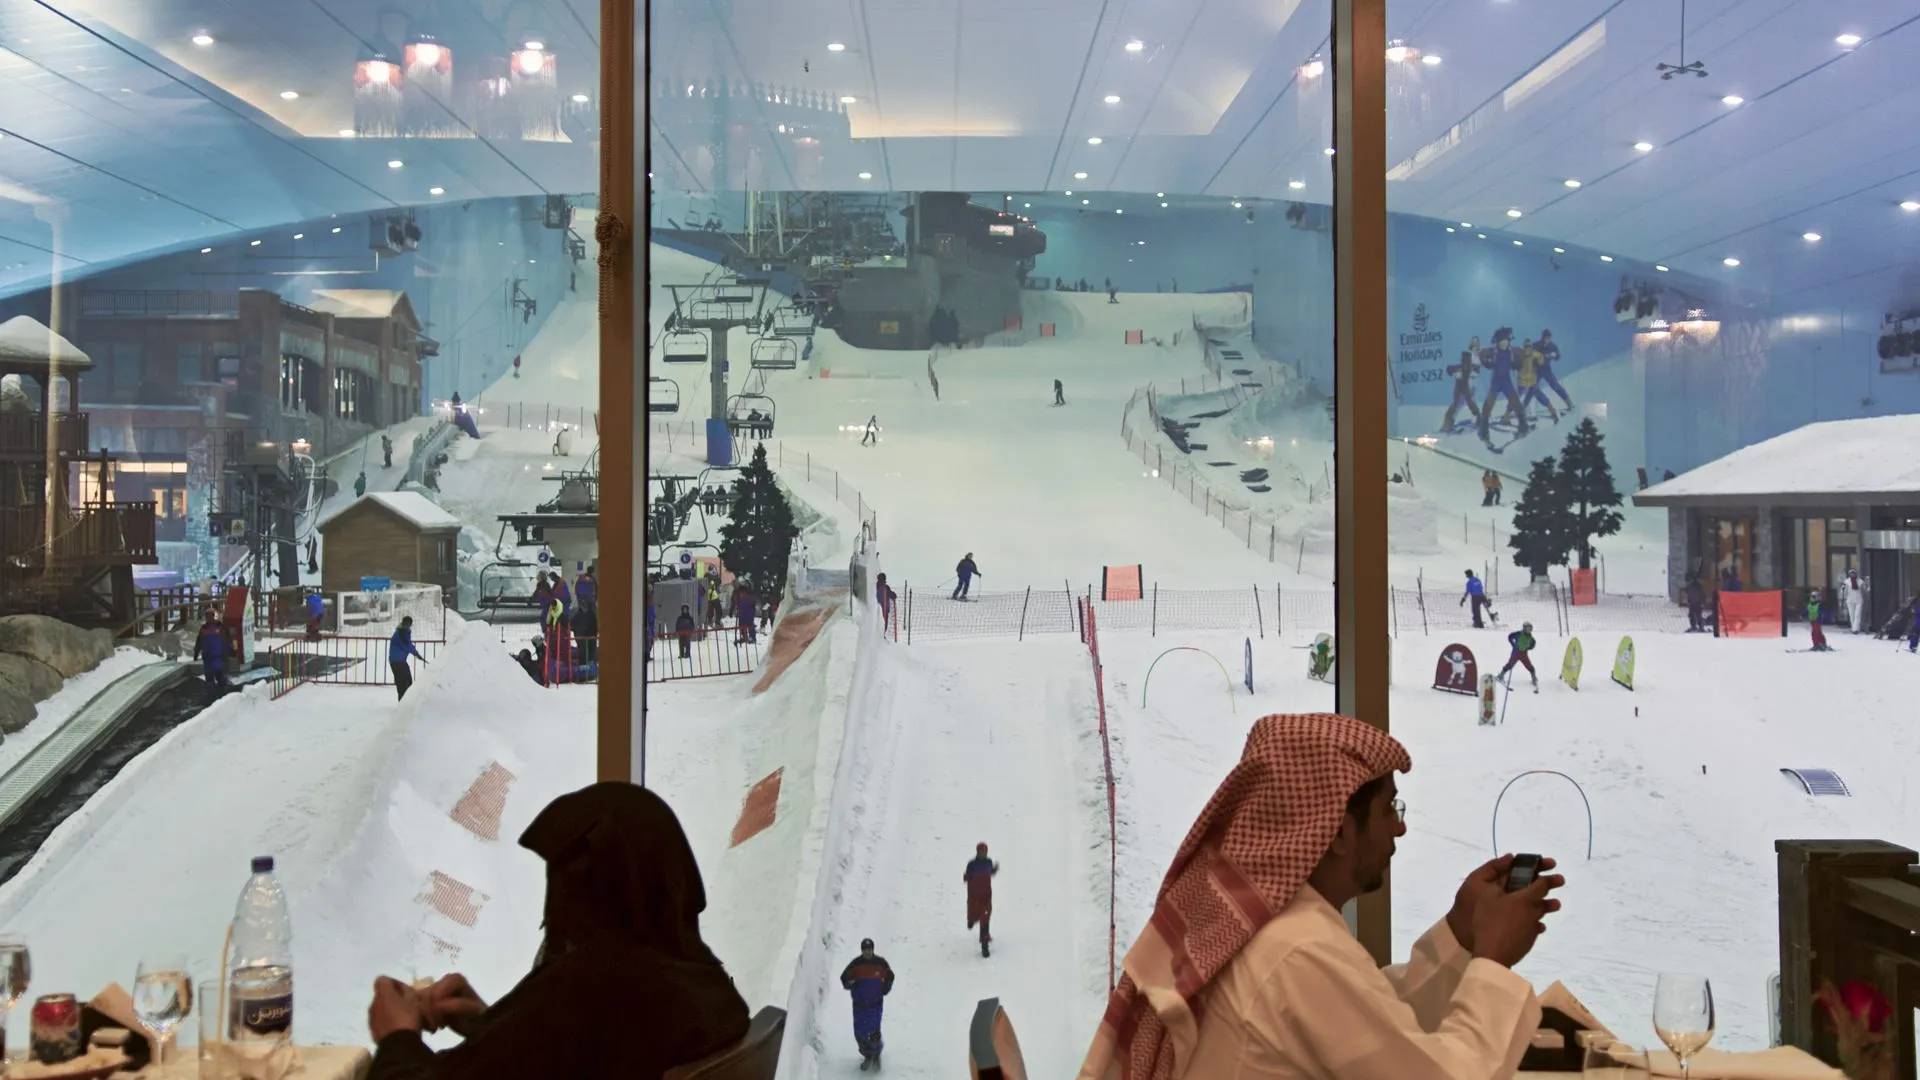 На Ski Dubai можно насладиться катанием на лыжах, сноуборде, ледяных горках и играть в снежные игры в любое время года.